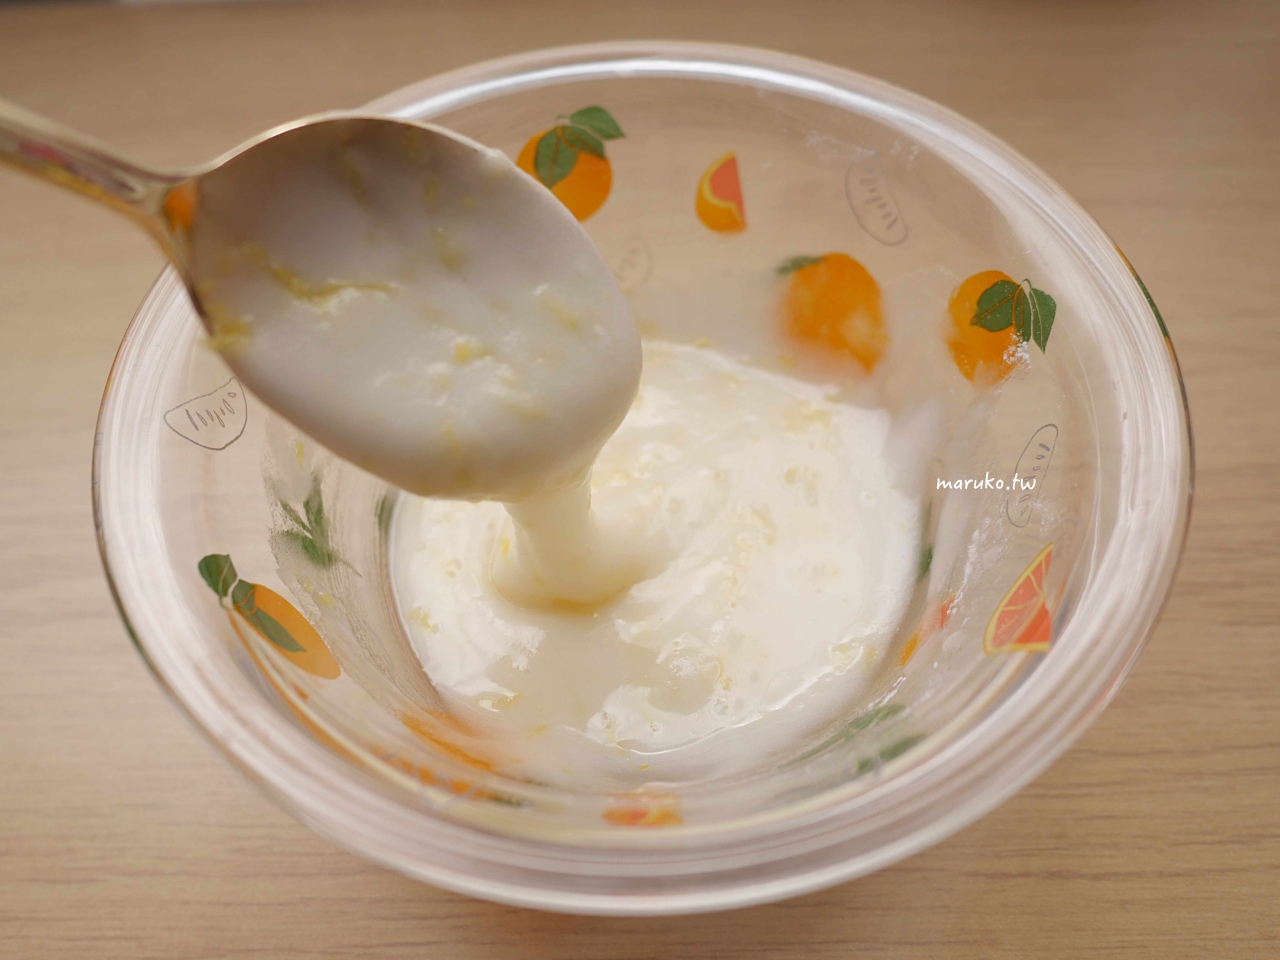 【食譜】檸檬糖霜可頌 二個步驟輕鬆做五分鐘簡單下午茶點心 @Maruko與美食有個約會